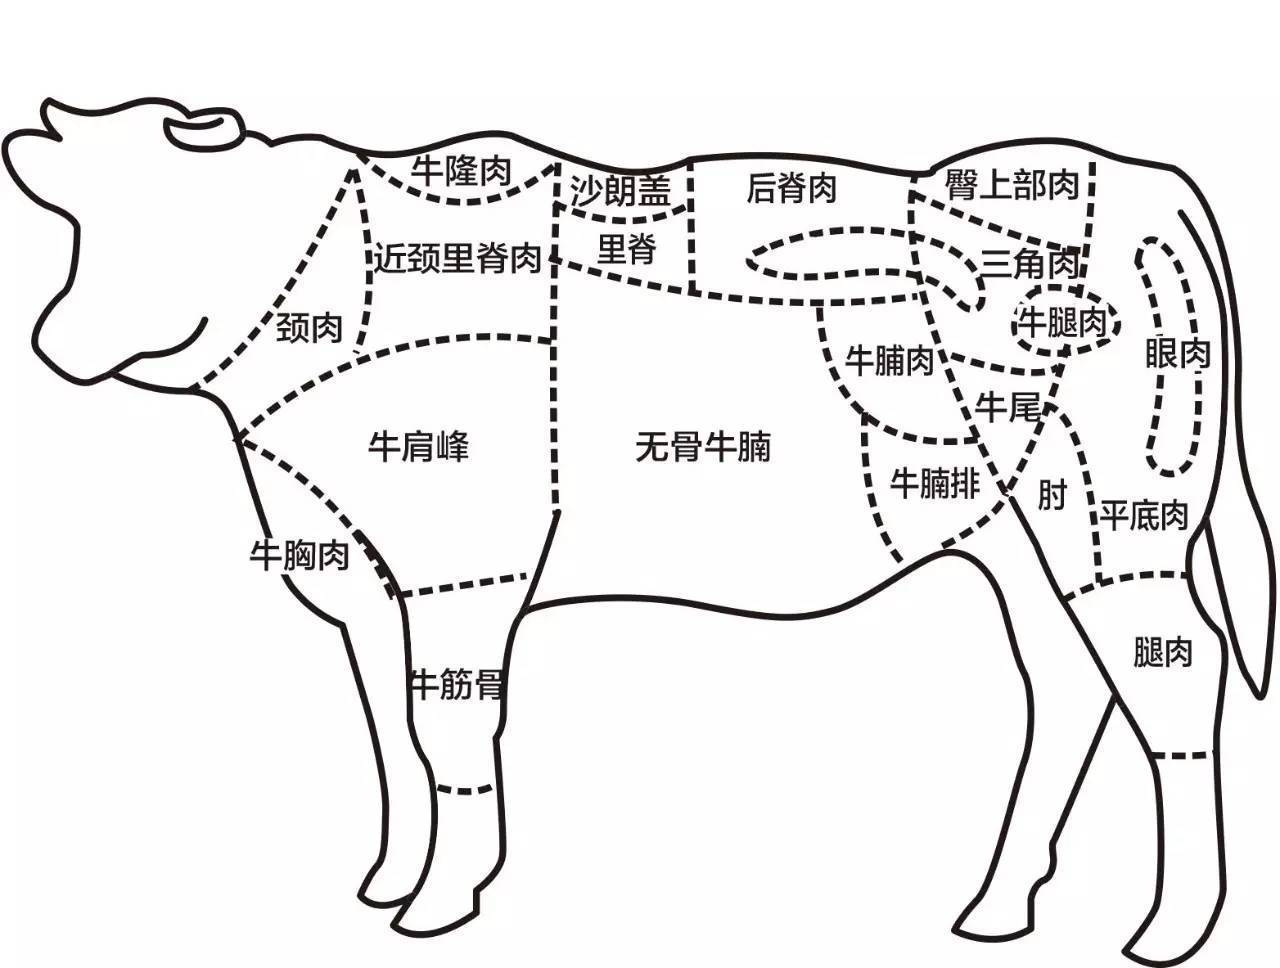 牛肉分解图高清图示图片